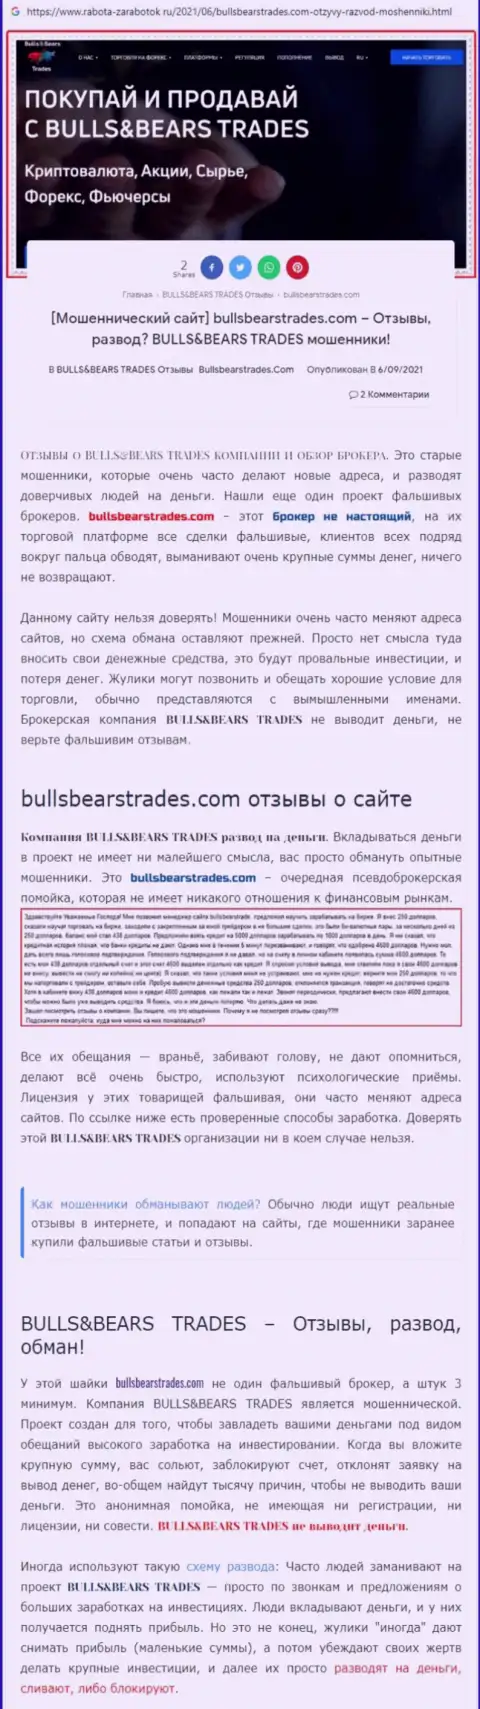 Обзор противозаконно действующей компании Bulls Bears Trades о том, как лохотронит реальных клиентов